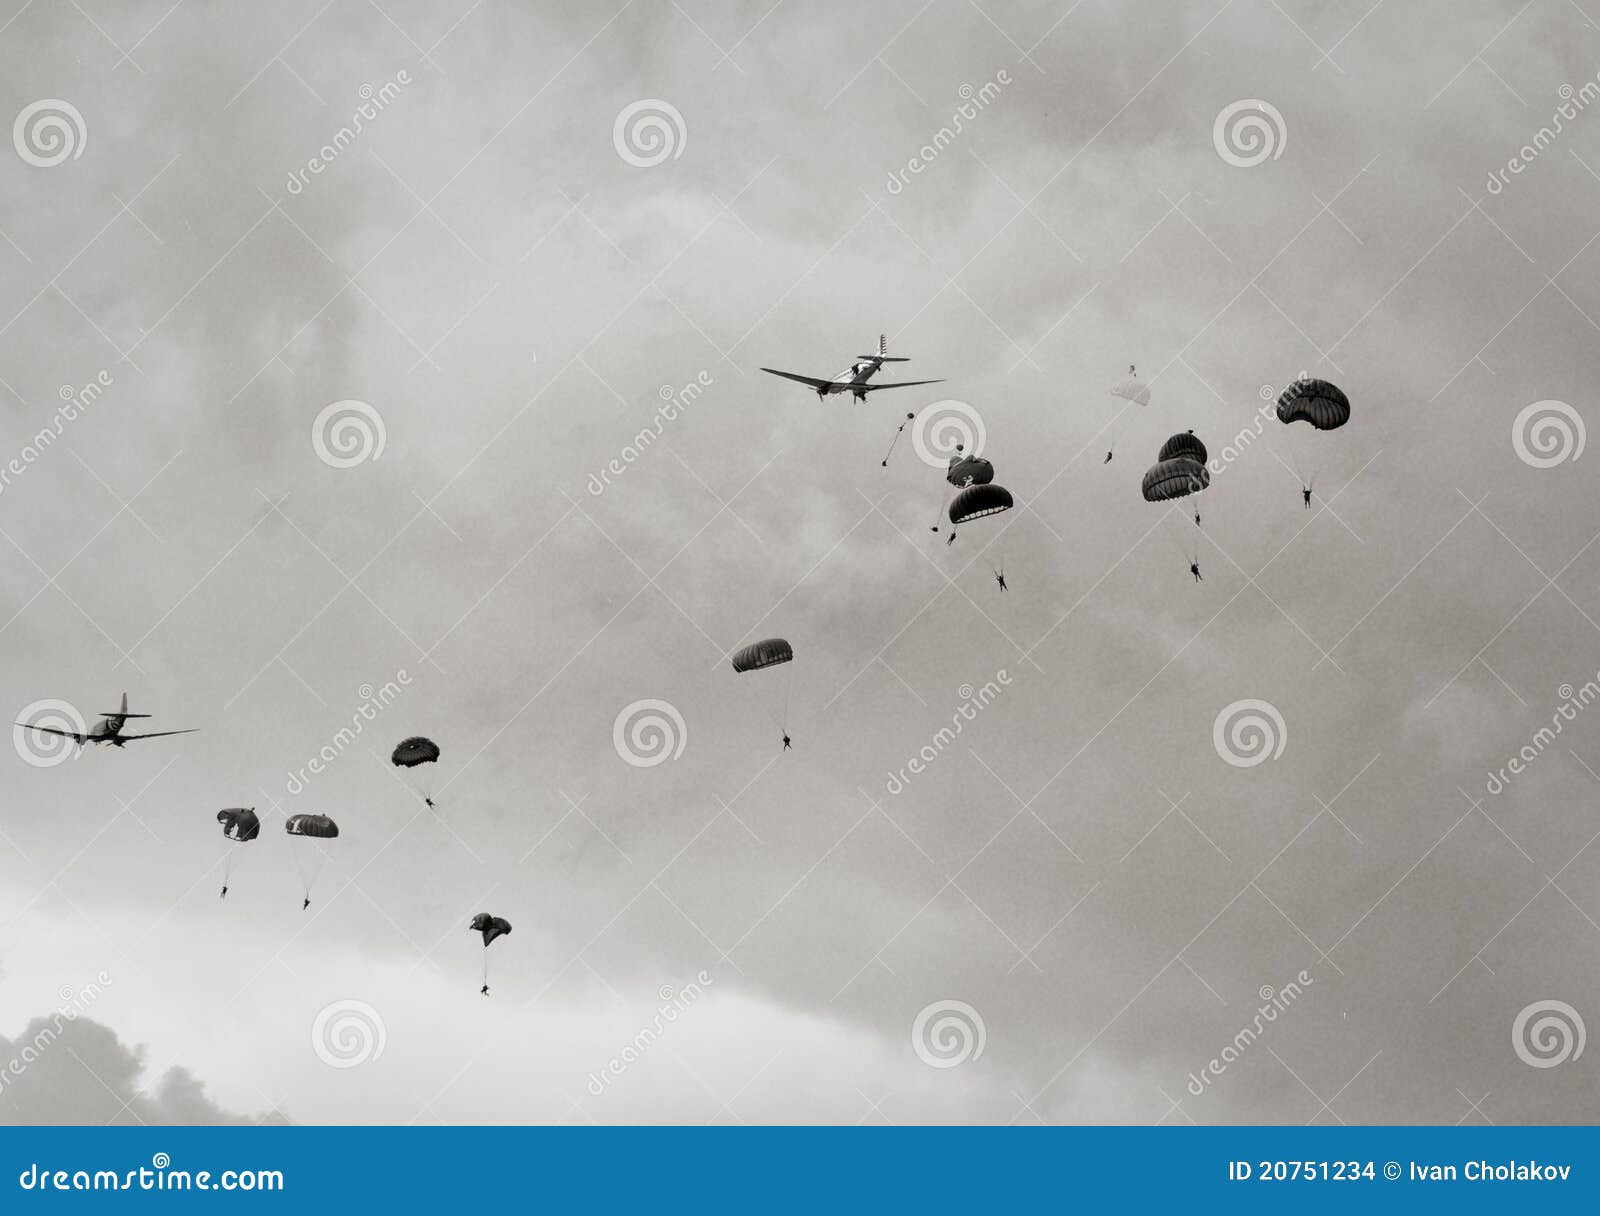 paratroopers air drop